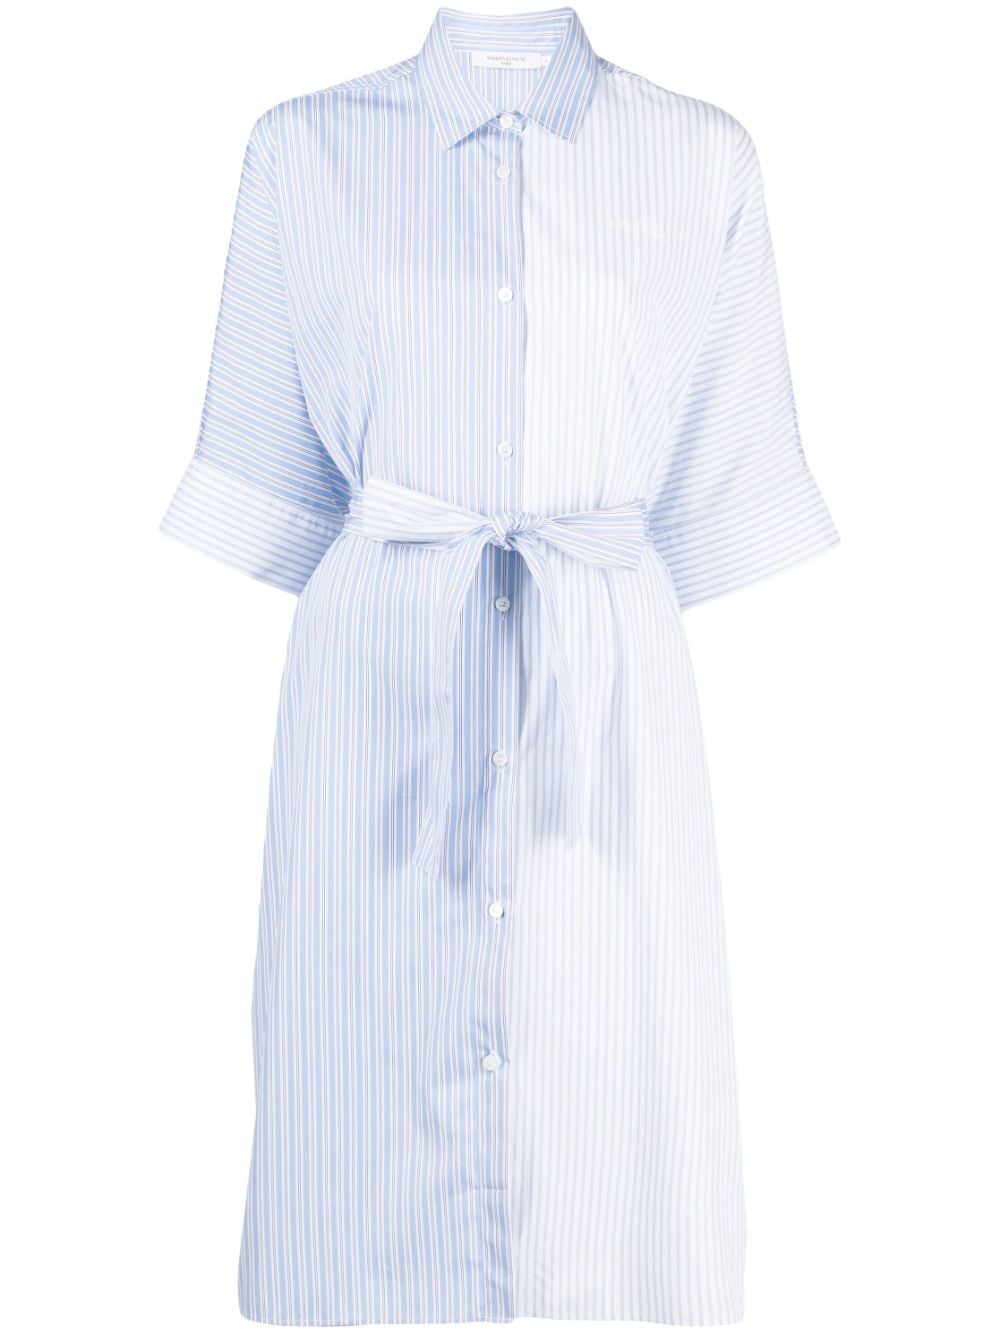 Maison Kitsuné Striped Shirt Dress - Farfetch